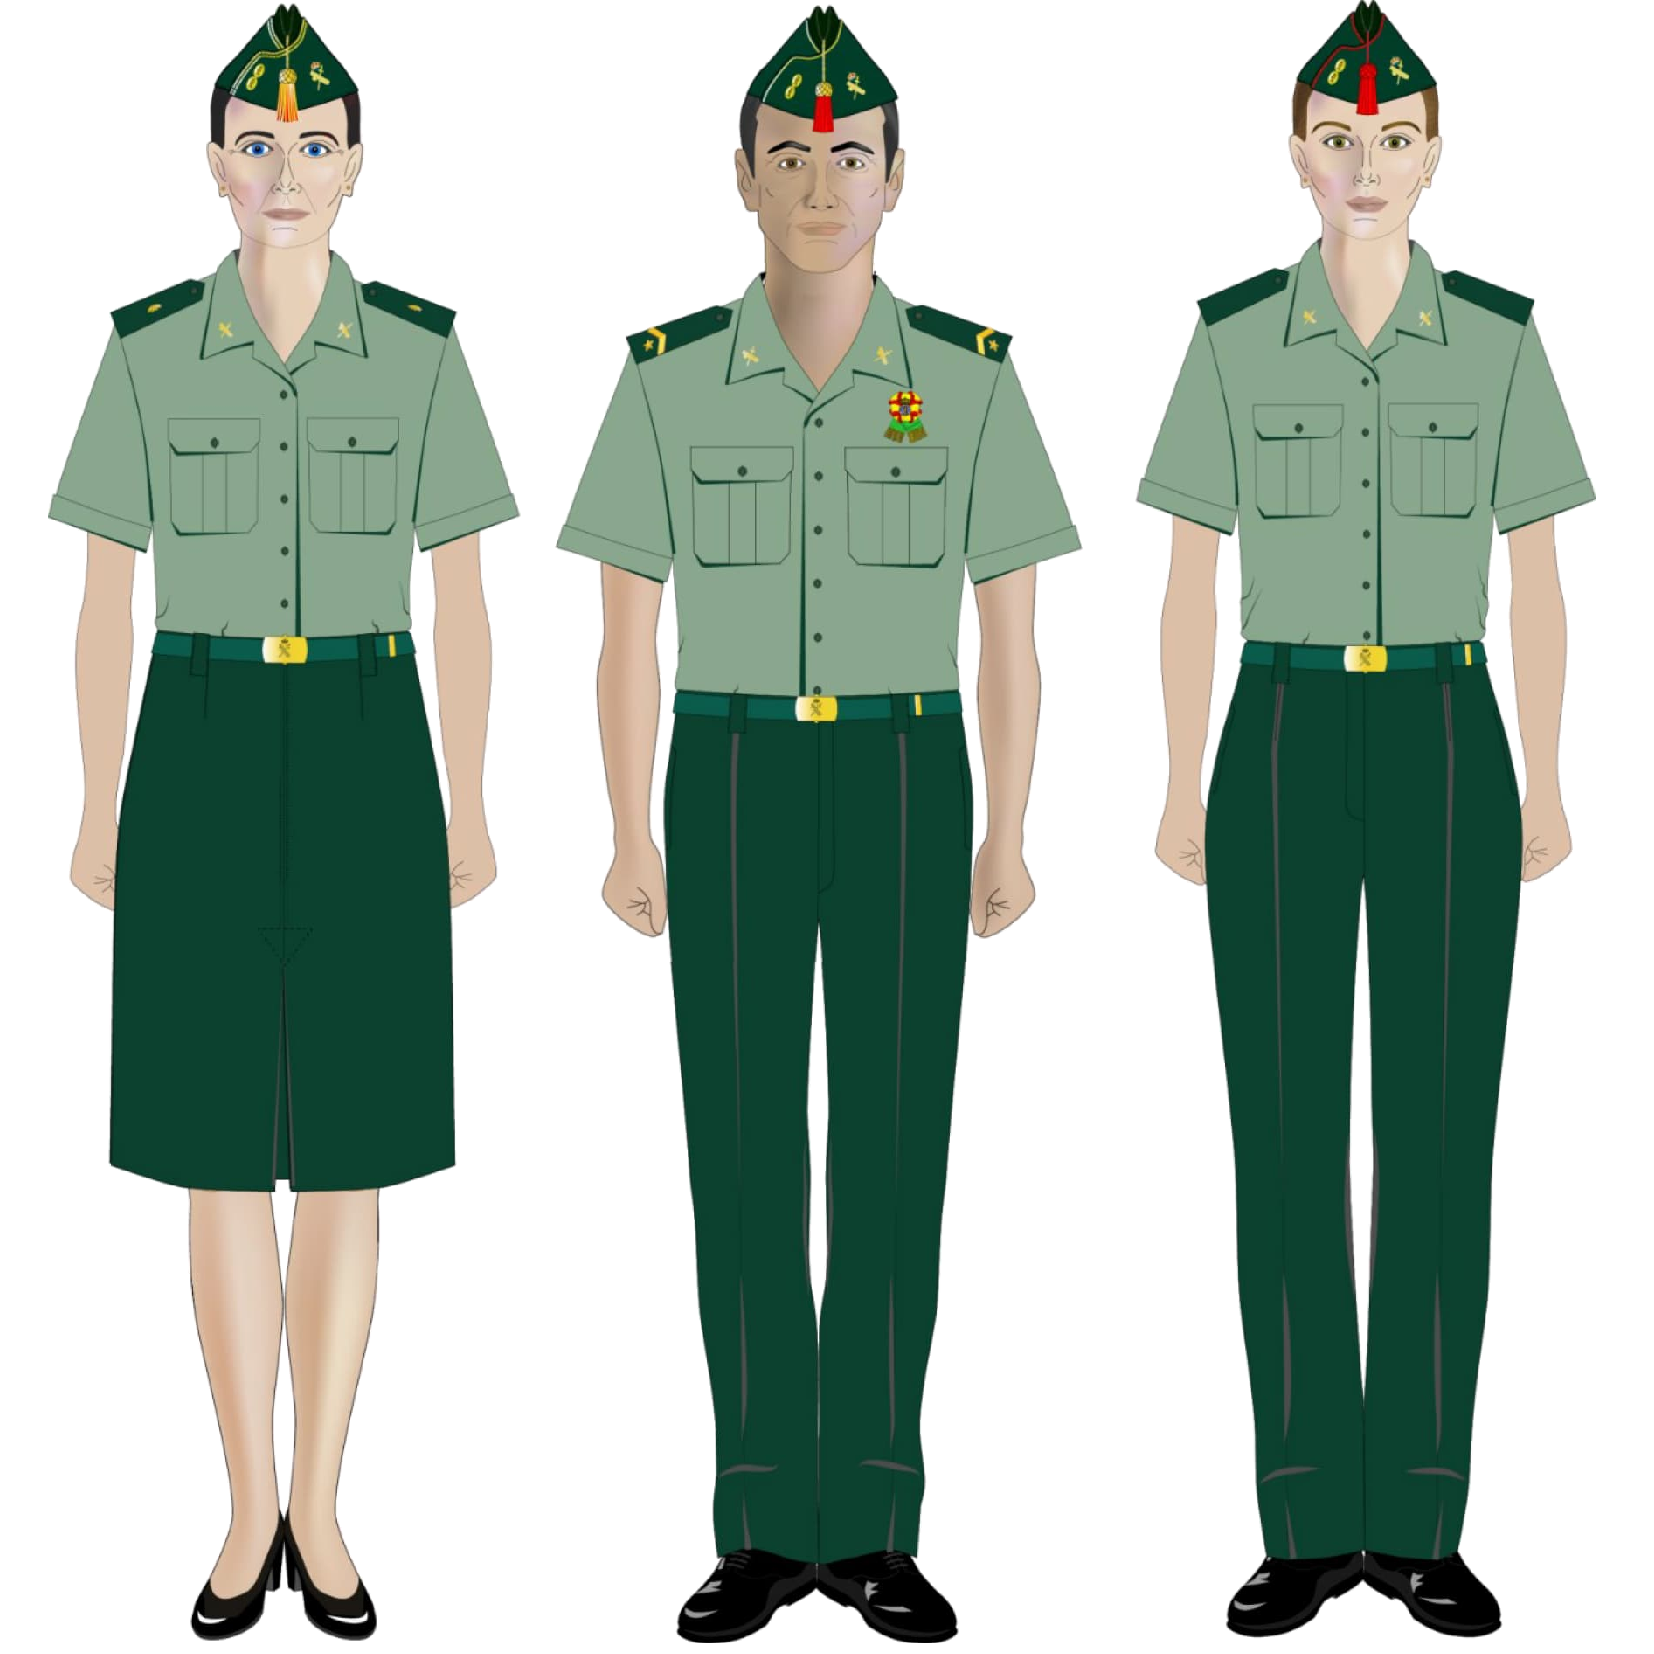 BOE-A-2023-5703 Orden PCM/208/2023, de 2 de marzo, por la que se aprueban  las normas de uniformidad de la Guardia Civil.